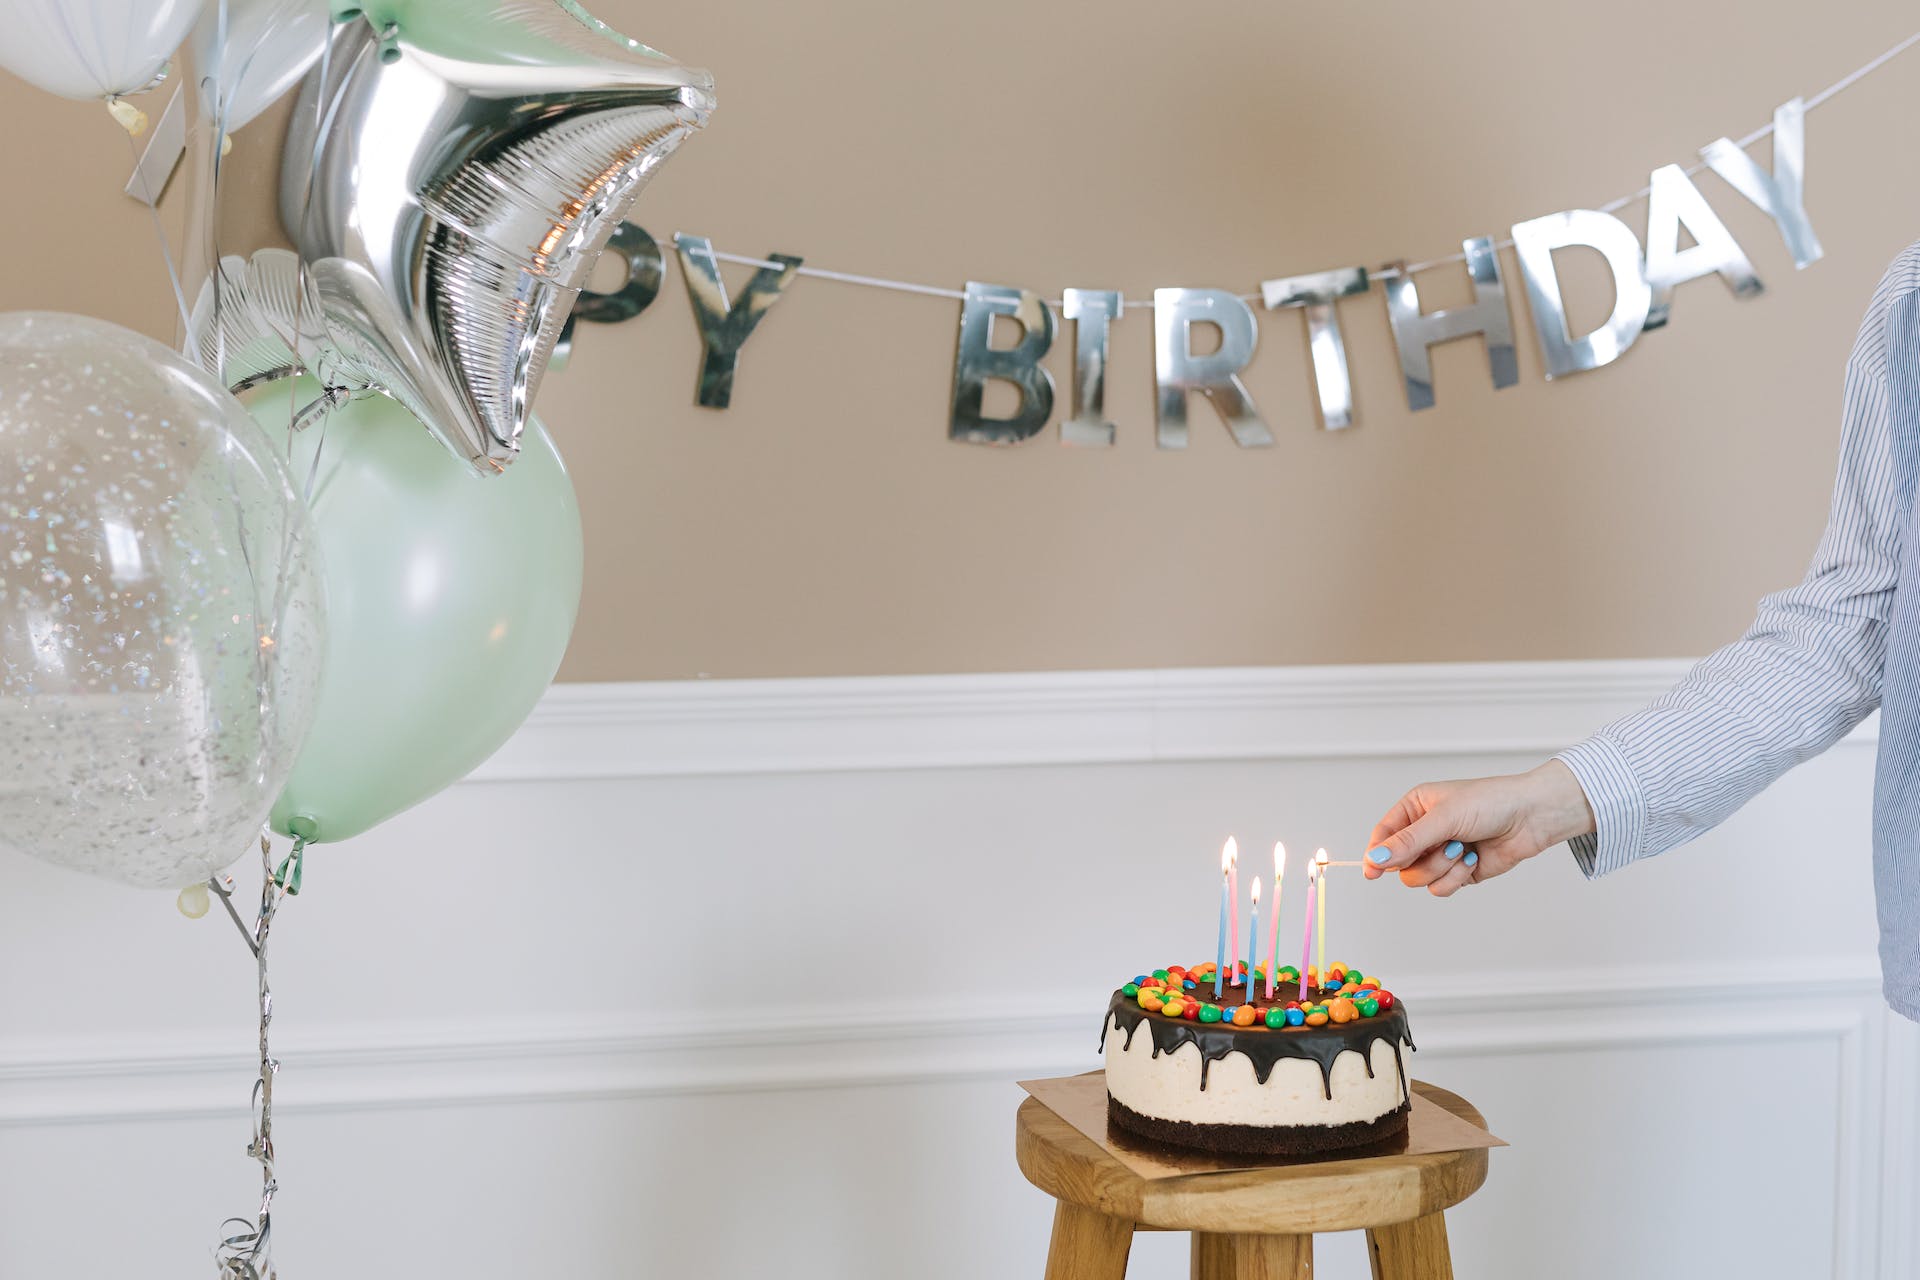 Una persona encendiendo una vela en una tarta de cumpleaños | Fuente: Pexels